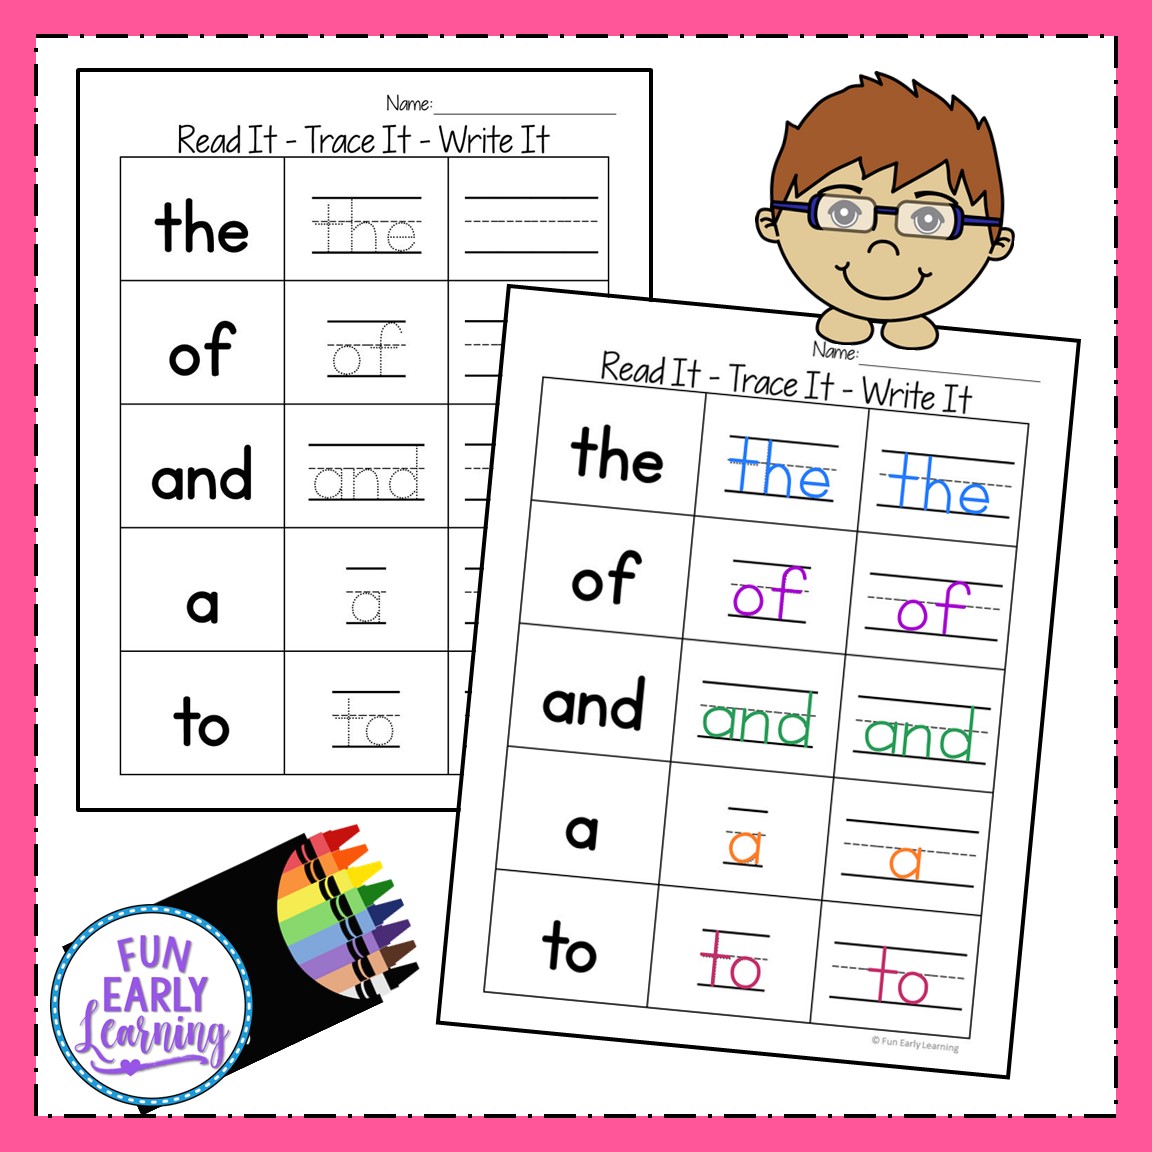 free-printable-kindergarten-sight-word-worksheets-free-printable